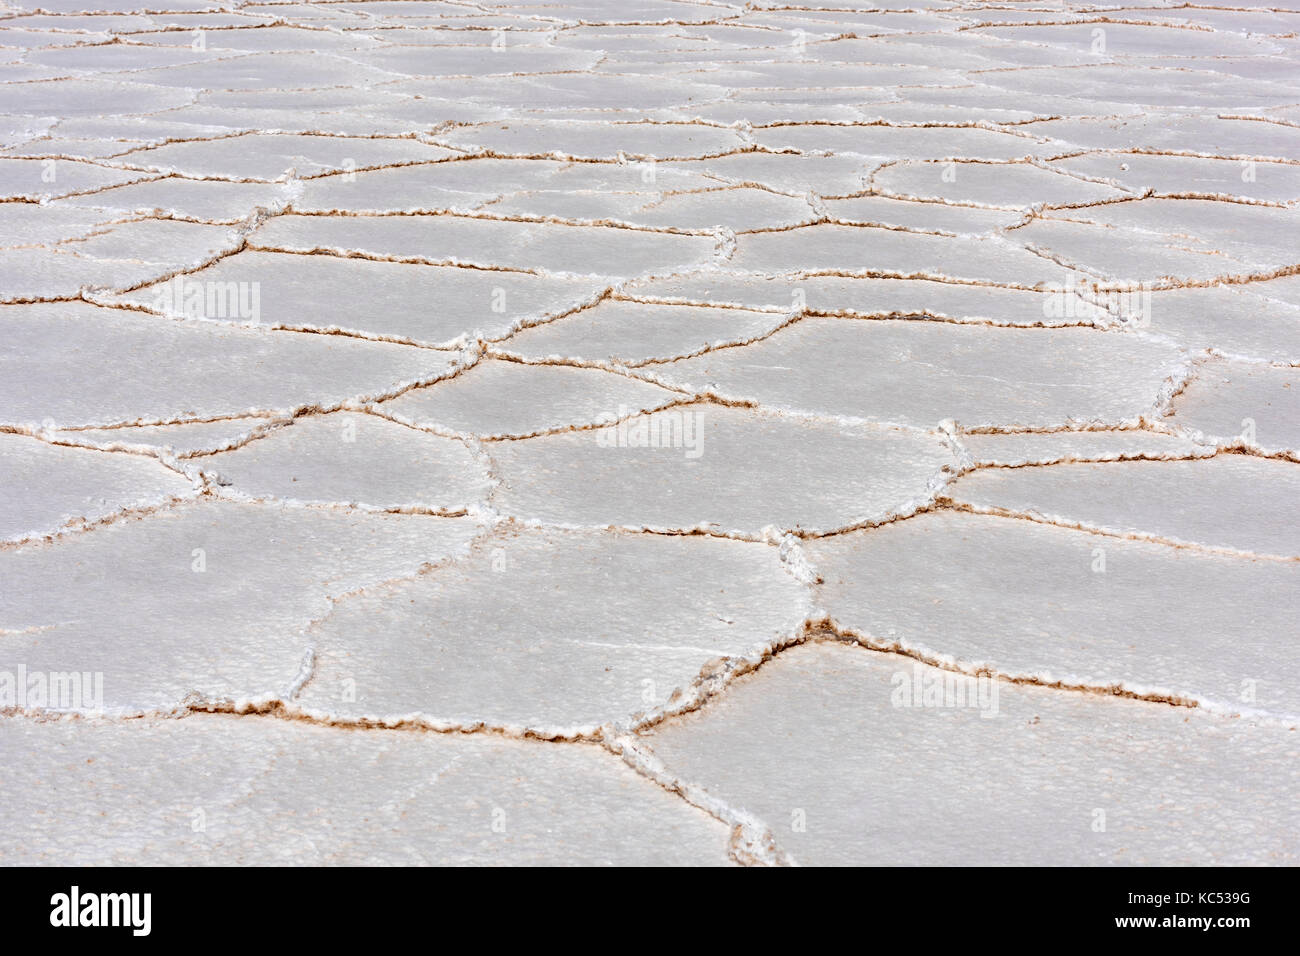 Kristalline Strukturen, Salar de Uyuni, Altiplano, 3670 m über dem Meeresspiegel, Bolivien, Südamerika Stockfoto